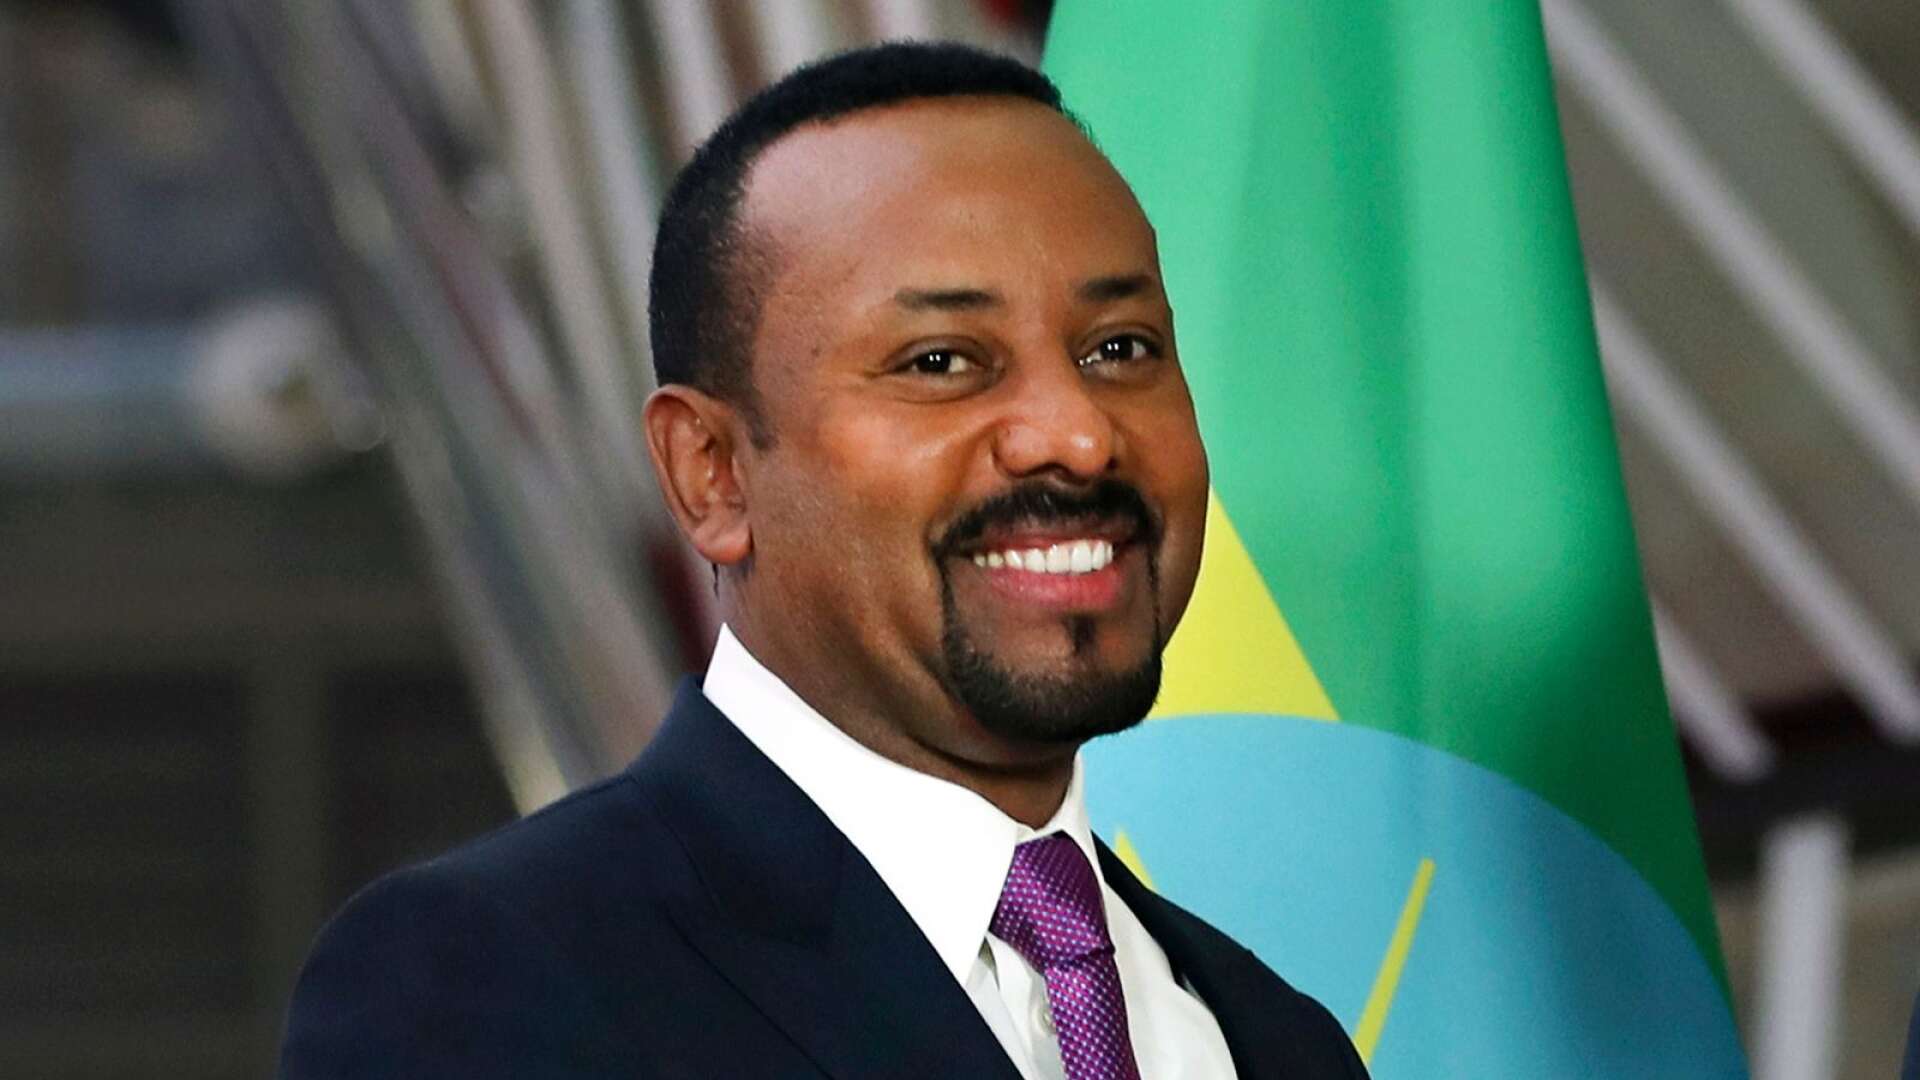 Än en gång har Nobels fredspris gått till en religiös person: pingstvännen och den etiopiske premiärministern Abiy Ahmed, skriver Micael Grenholm, Tuve Skånberg och Reinhold Fahlbeck.